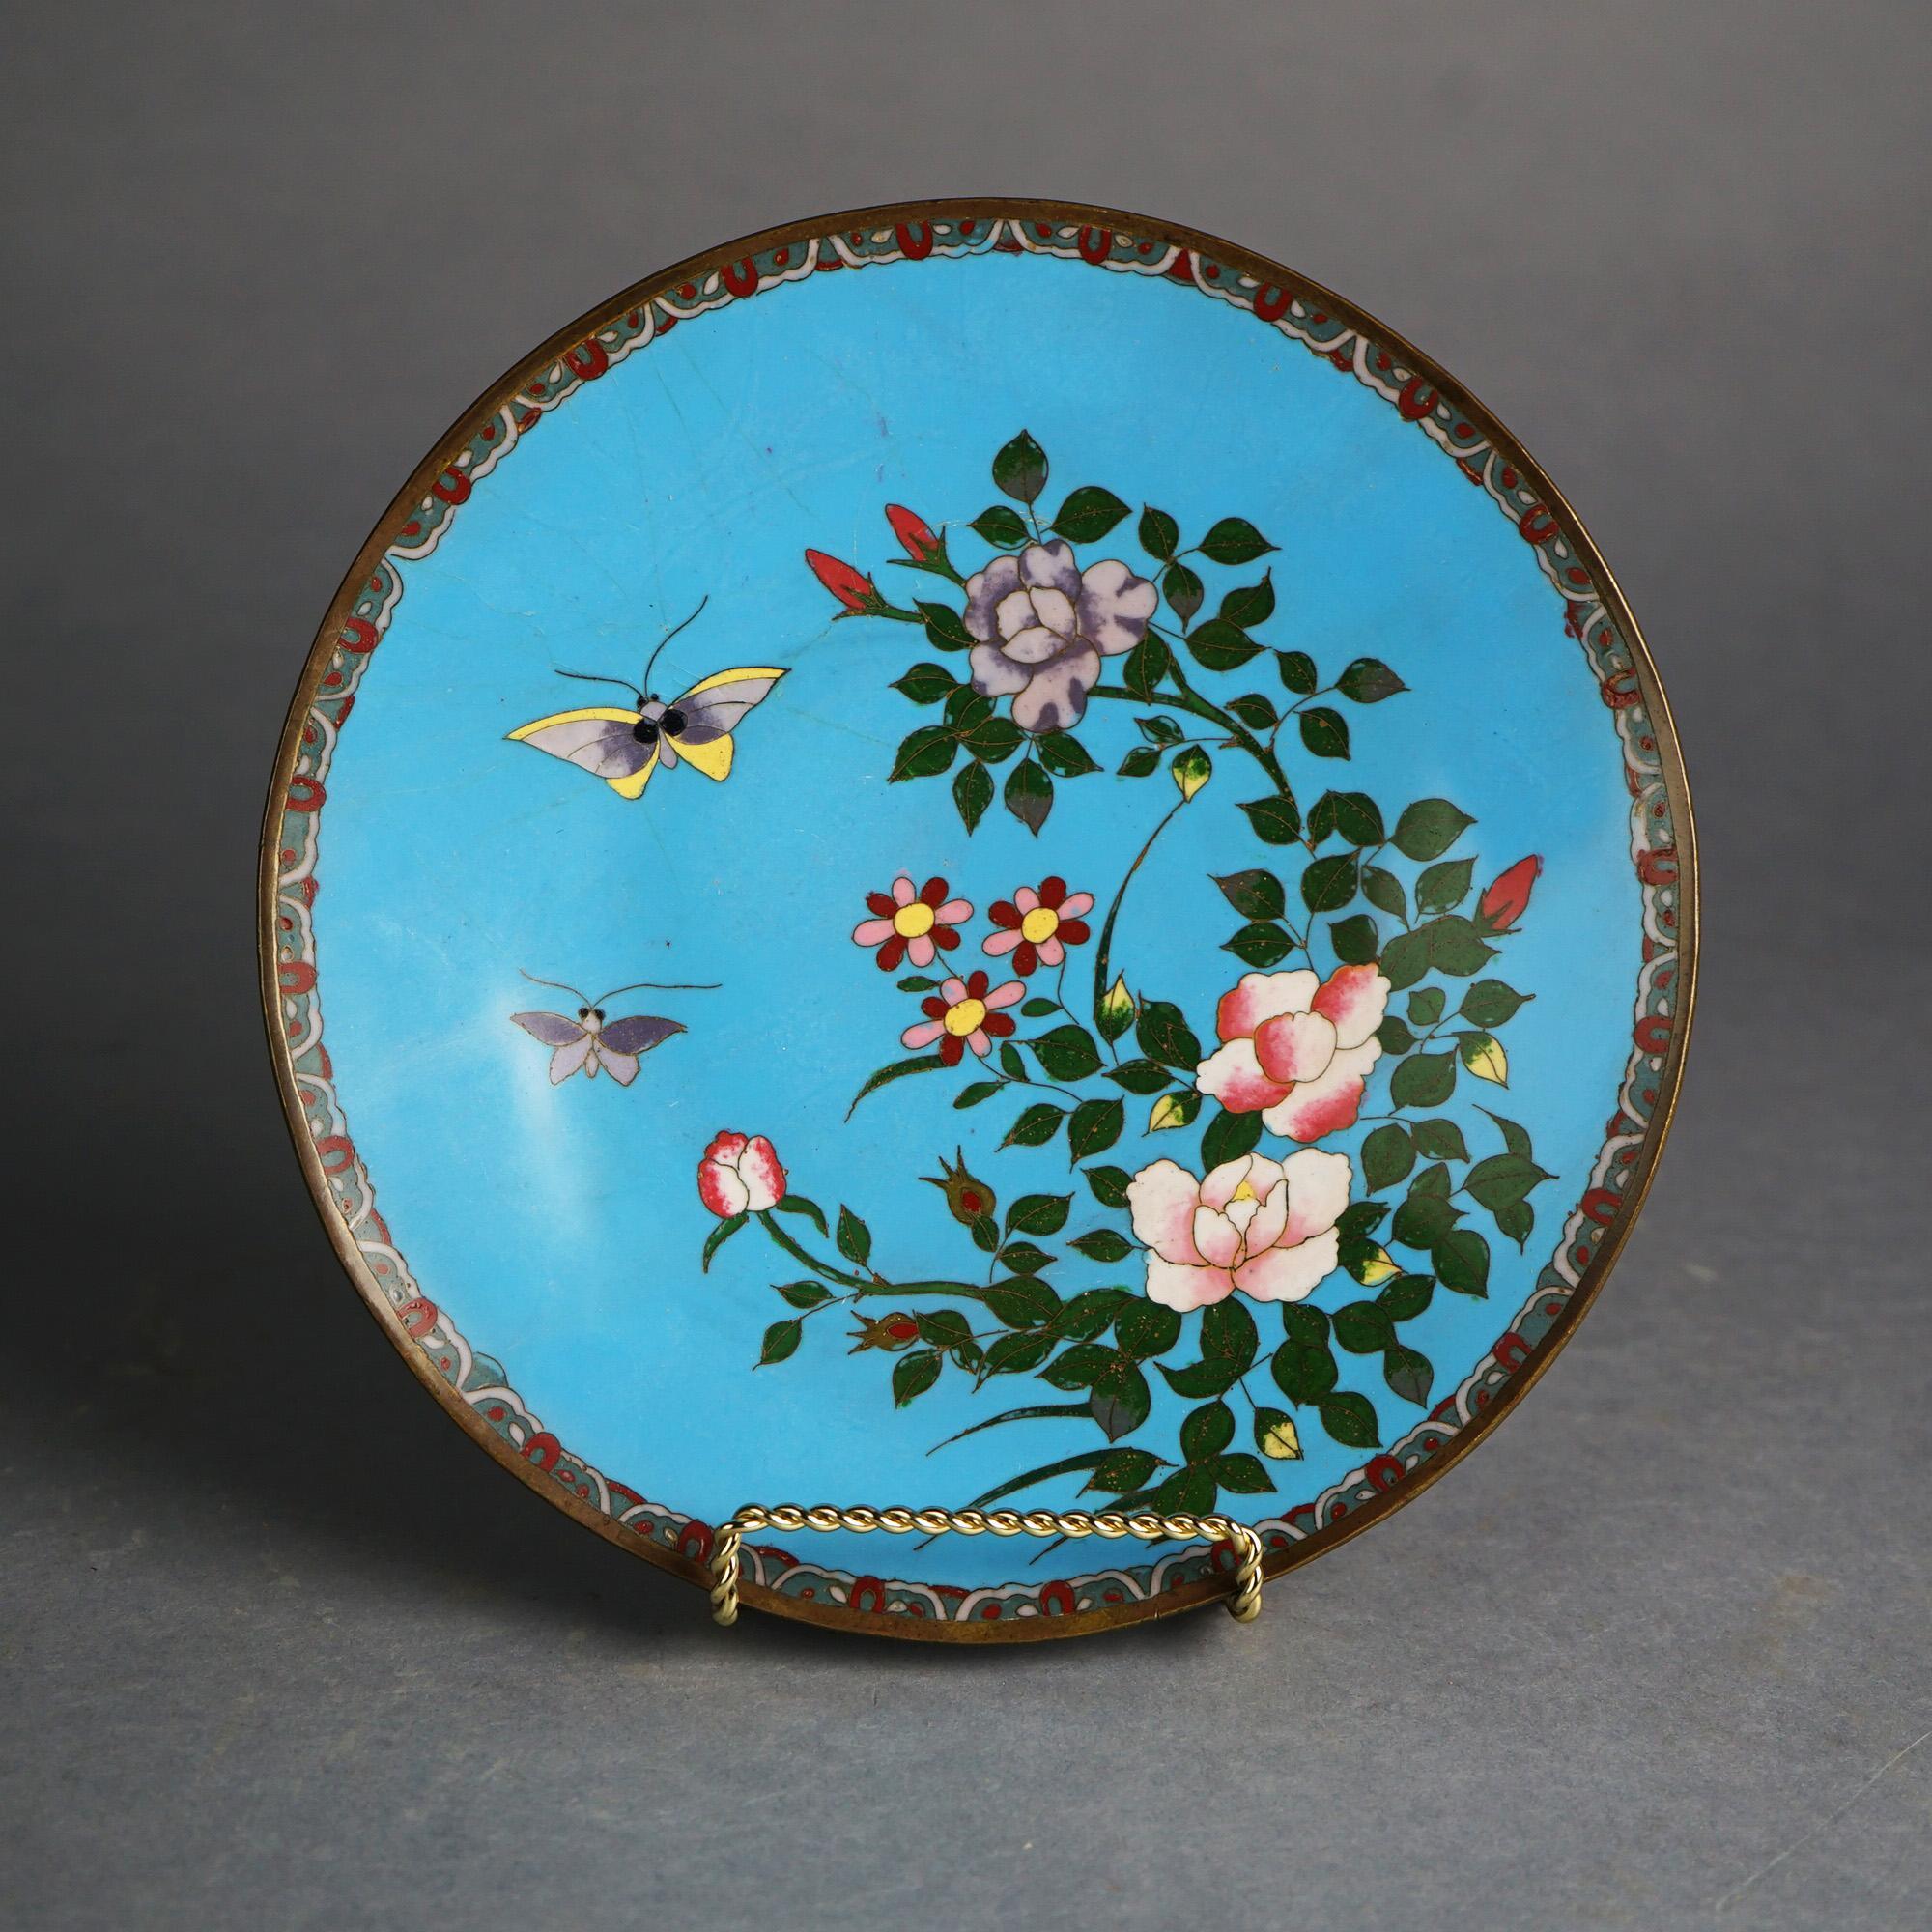 Antike japanische Meiji Cloisonné emailliert Charger mit Schmetterlingen und Garten Blumen C1920

Maße - 11.75 